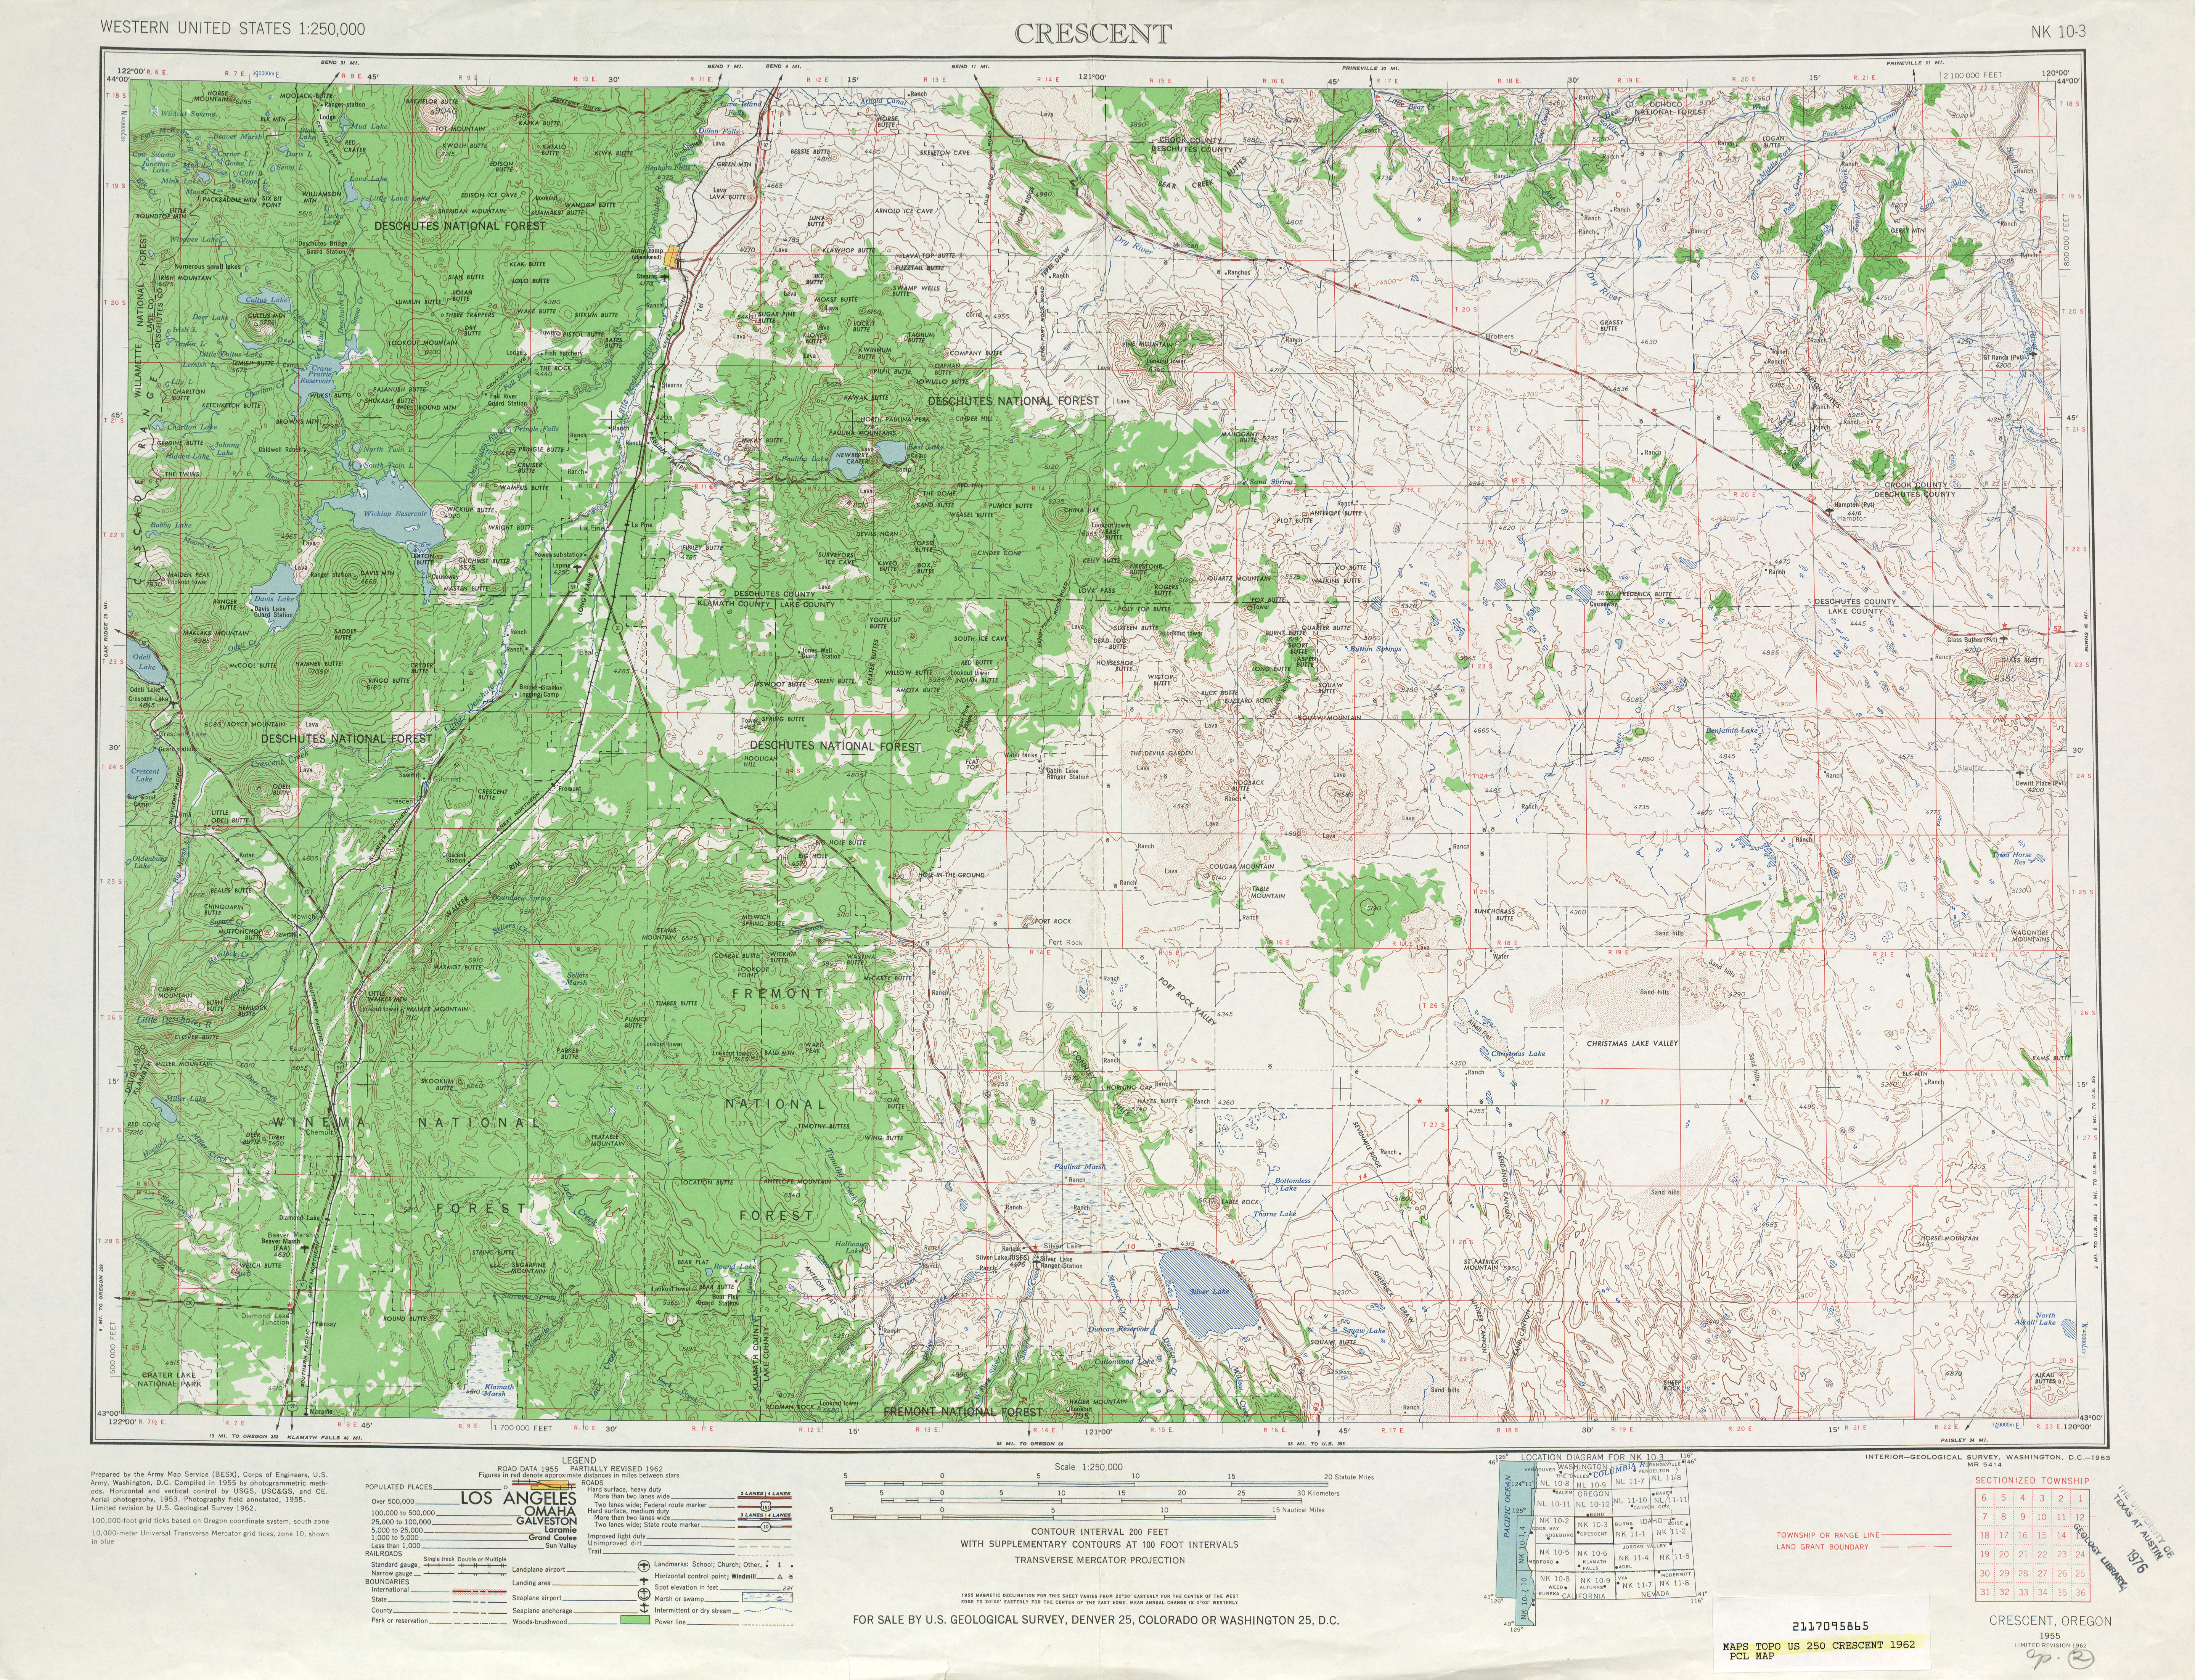 Hoja Crescent del Mapa Topográfico de los Estados Unidos 1962